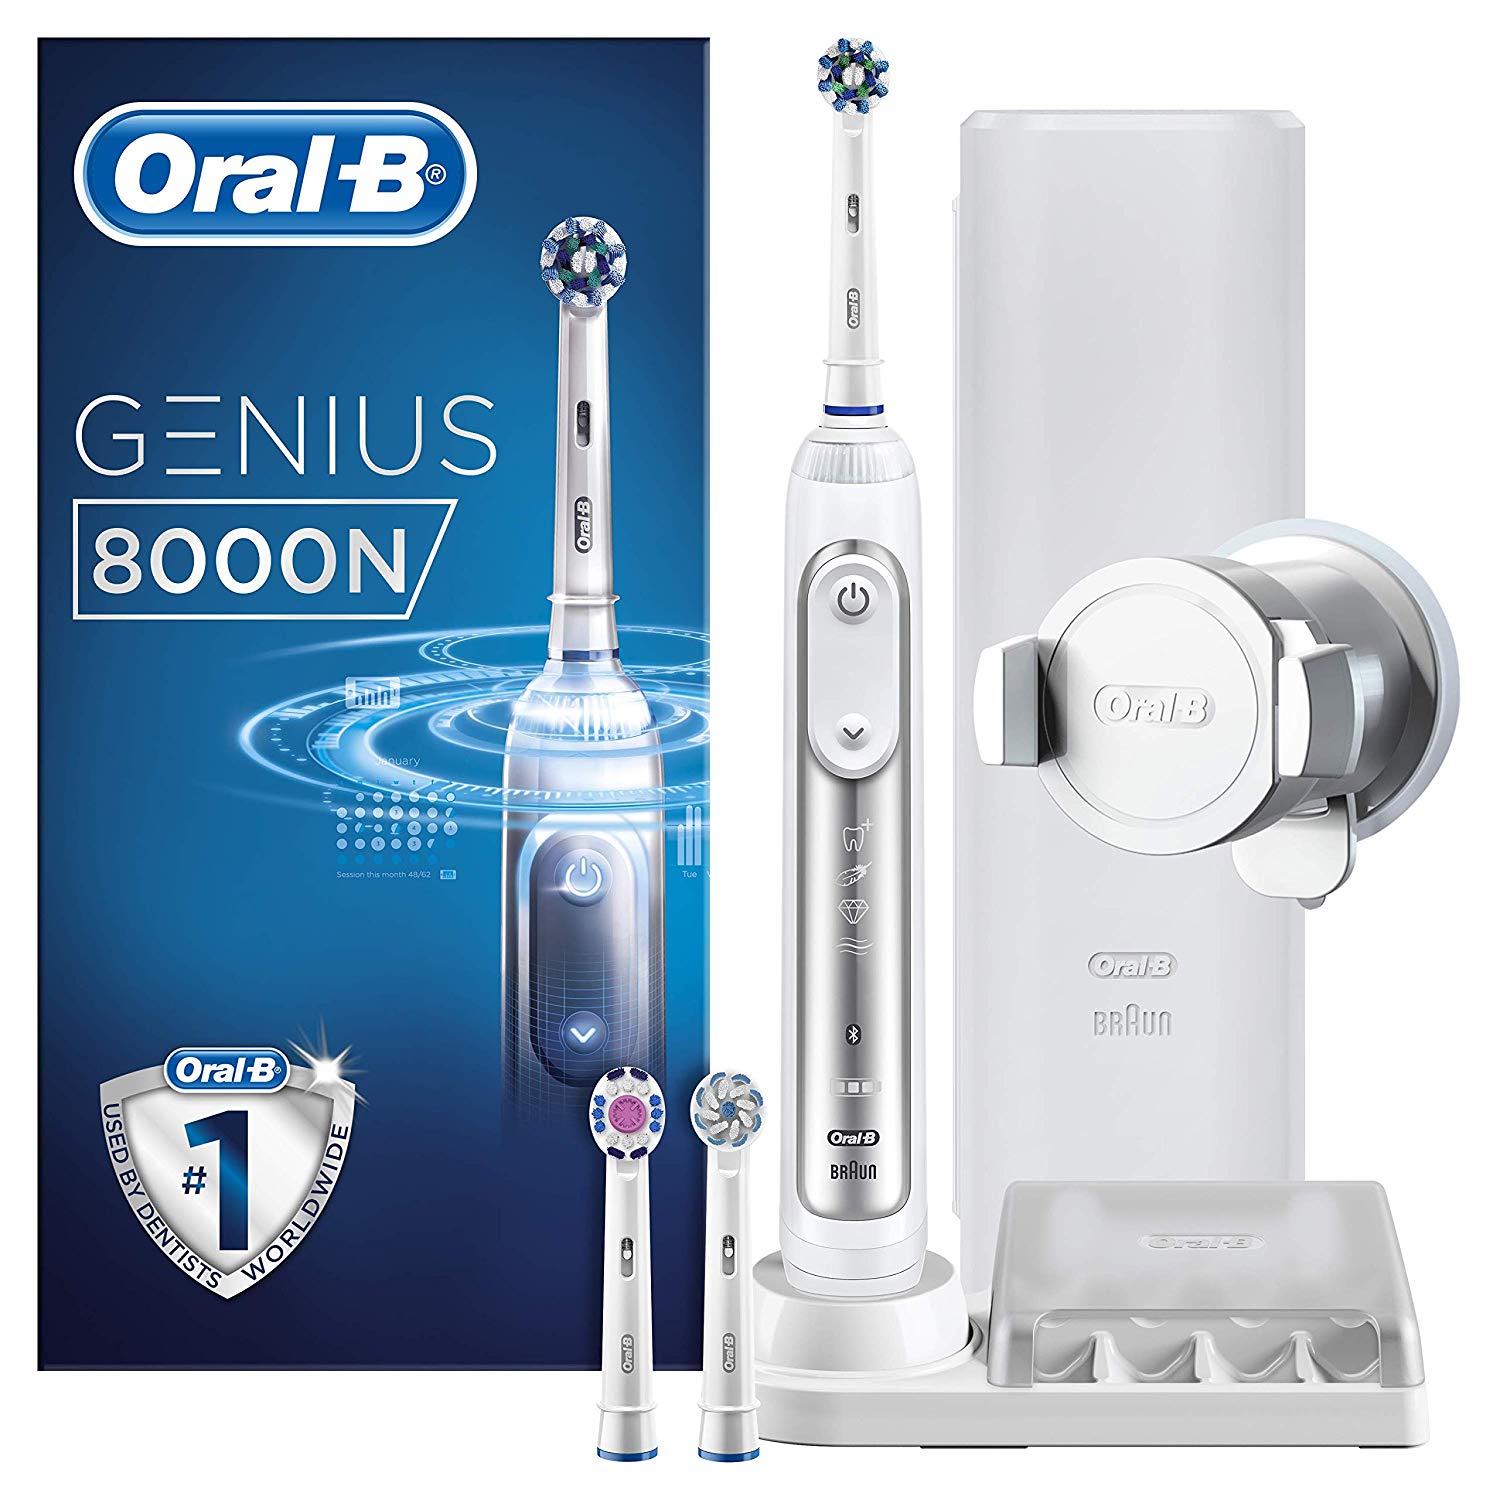 Cepillo eléctrico Oral B recomendado por dentistas en oferta